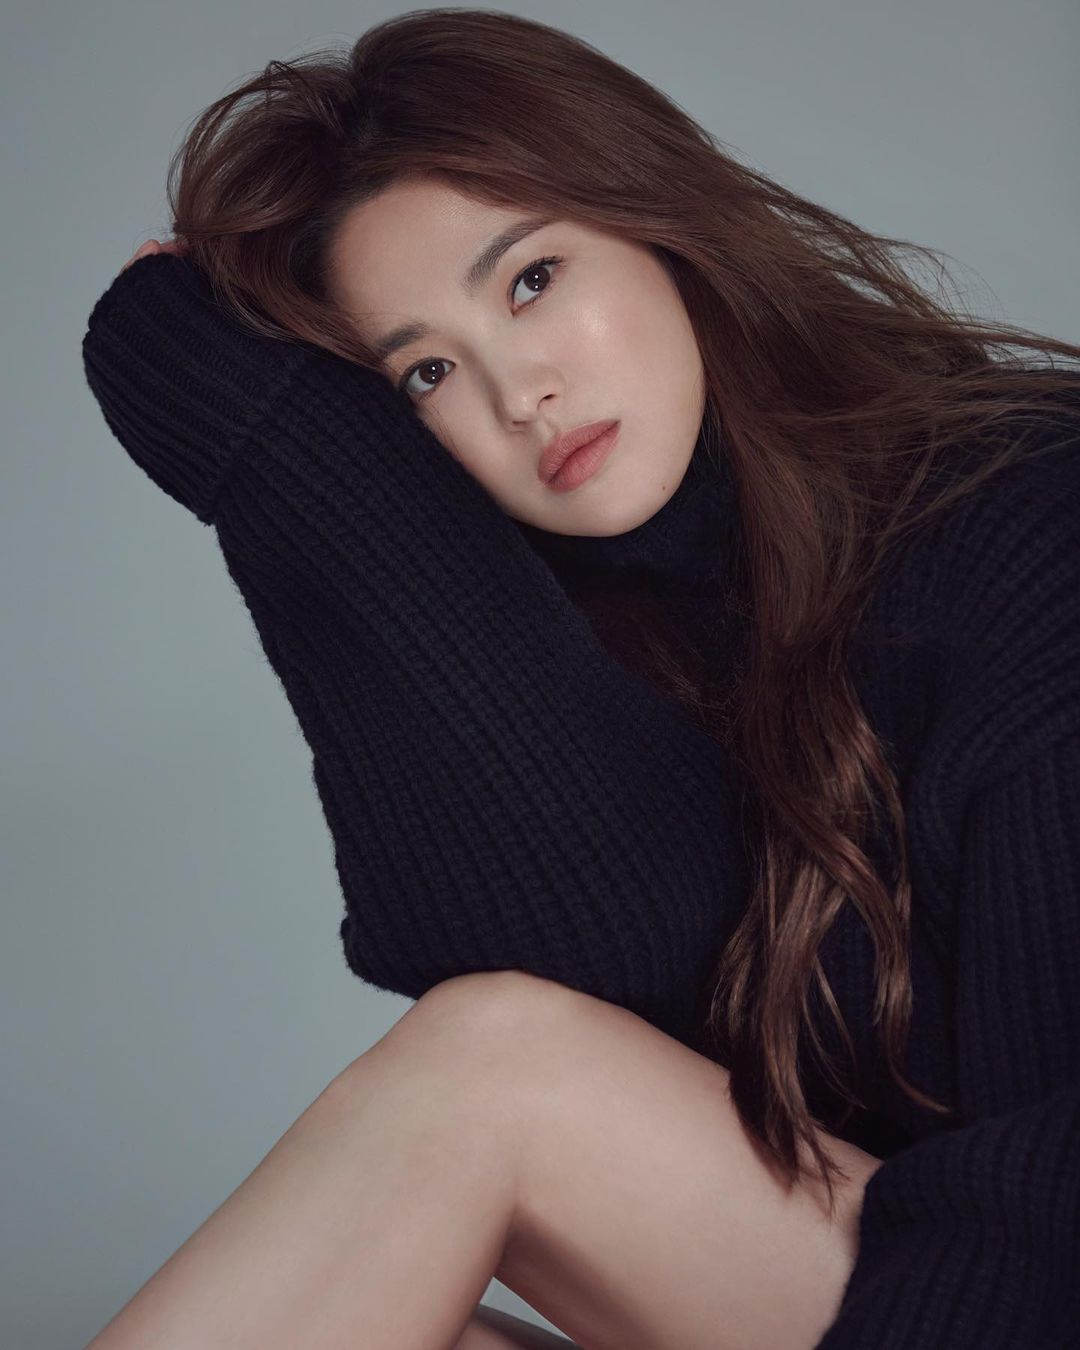 6 kiểu tóc xuất sắc nhất của Song Hye Kyo, chị em U30 'đu' theo thì nhan sắc dễ thăng hạng trong nháy mắt - Ảnh 1